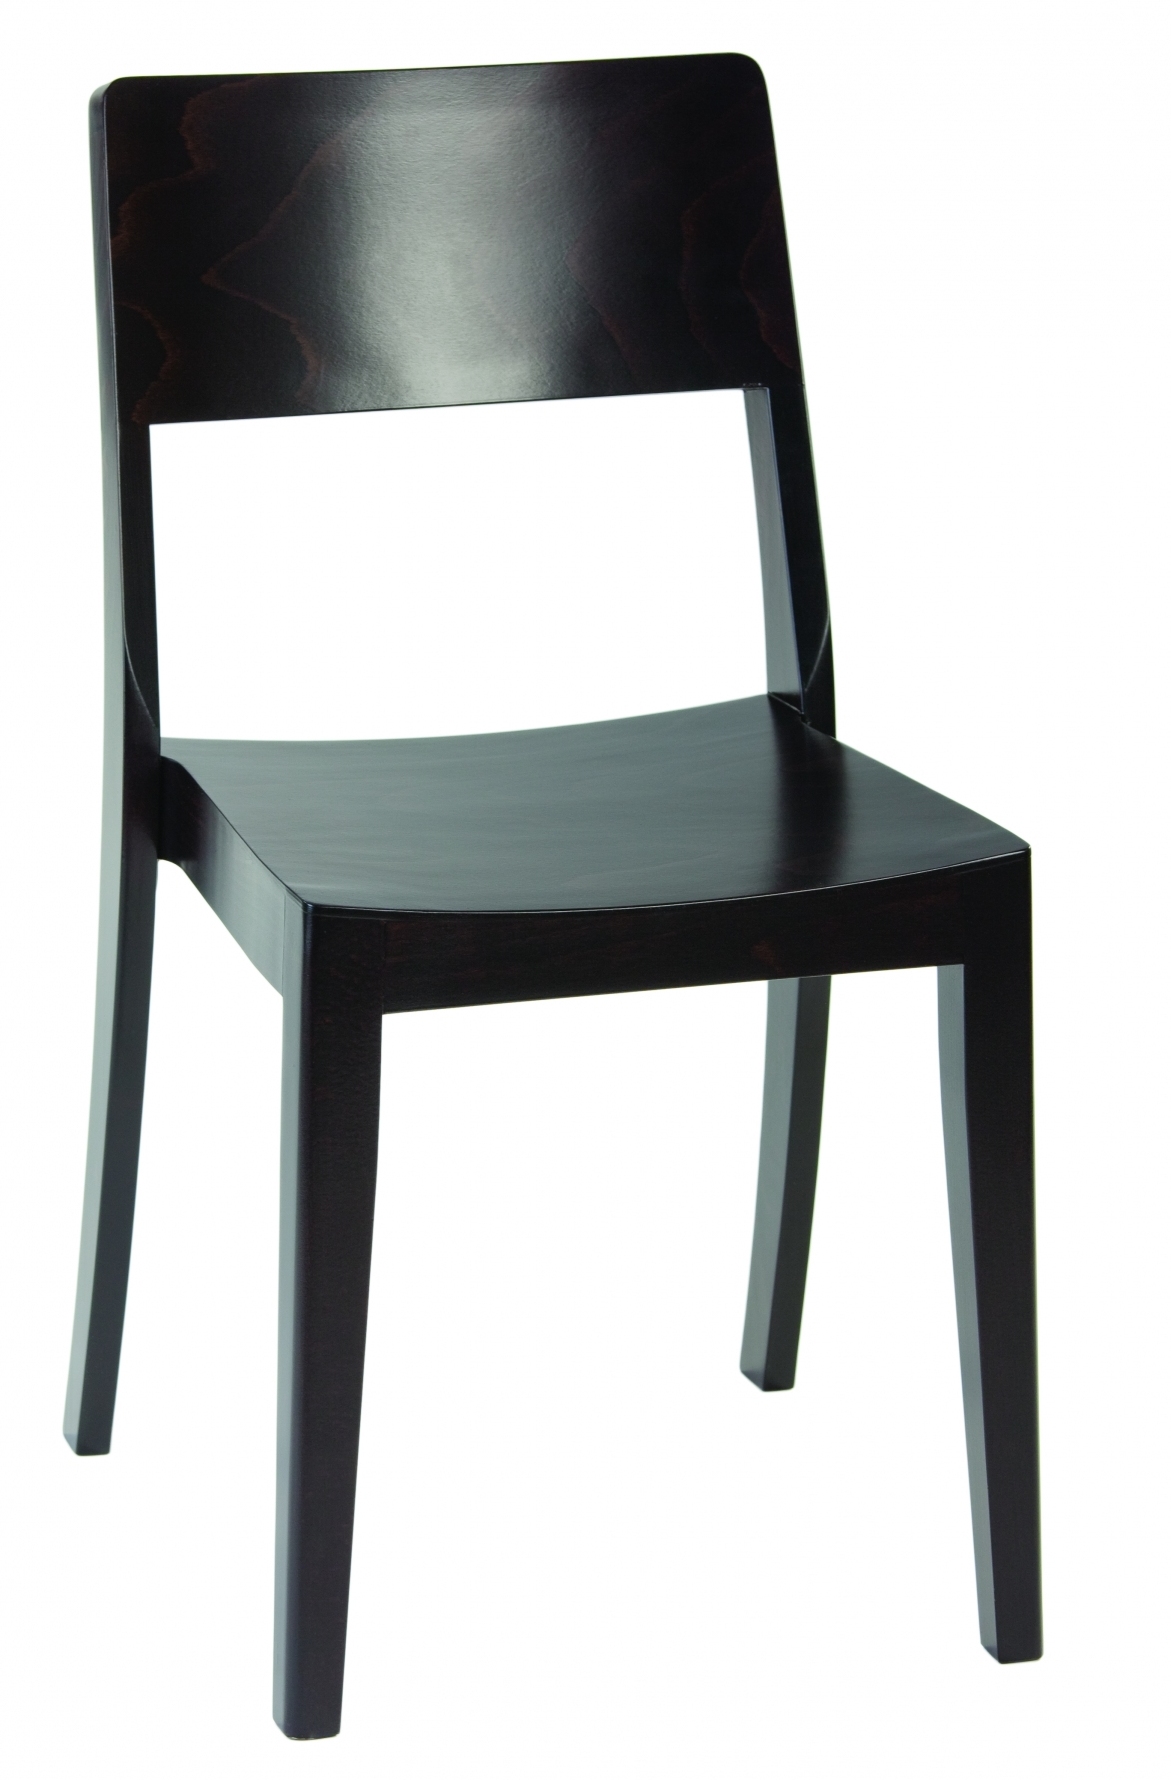 K-MJ-A-9705 krzesło